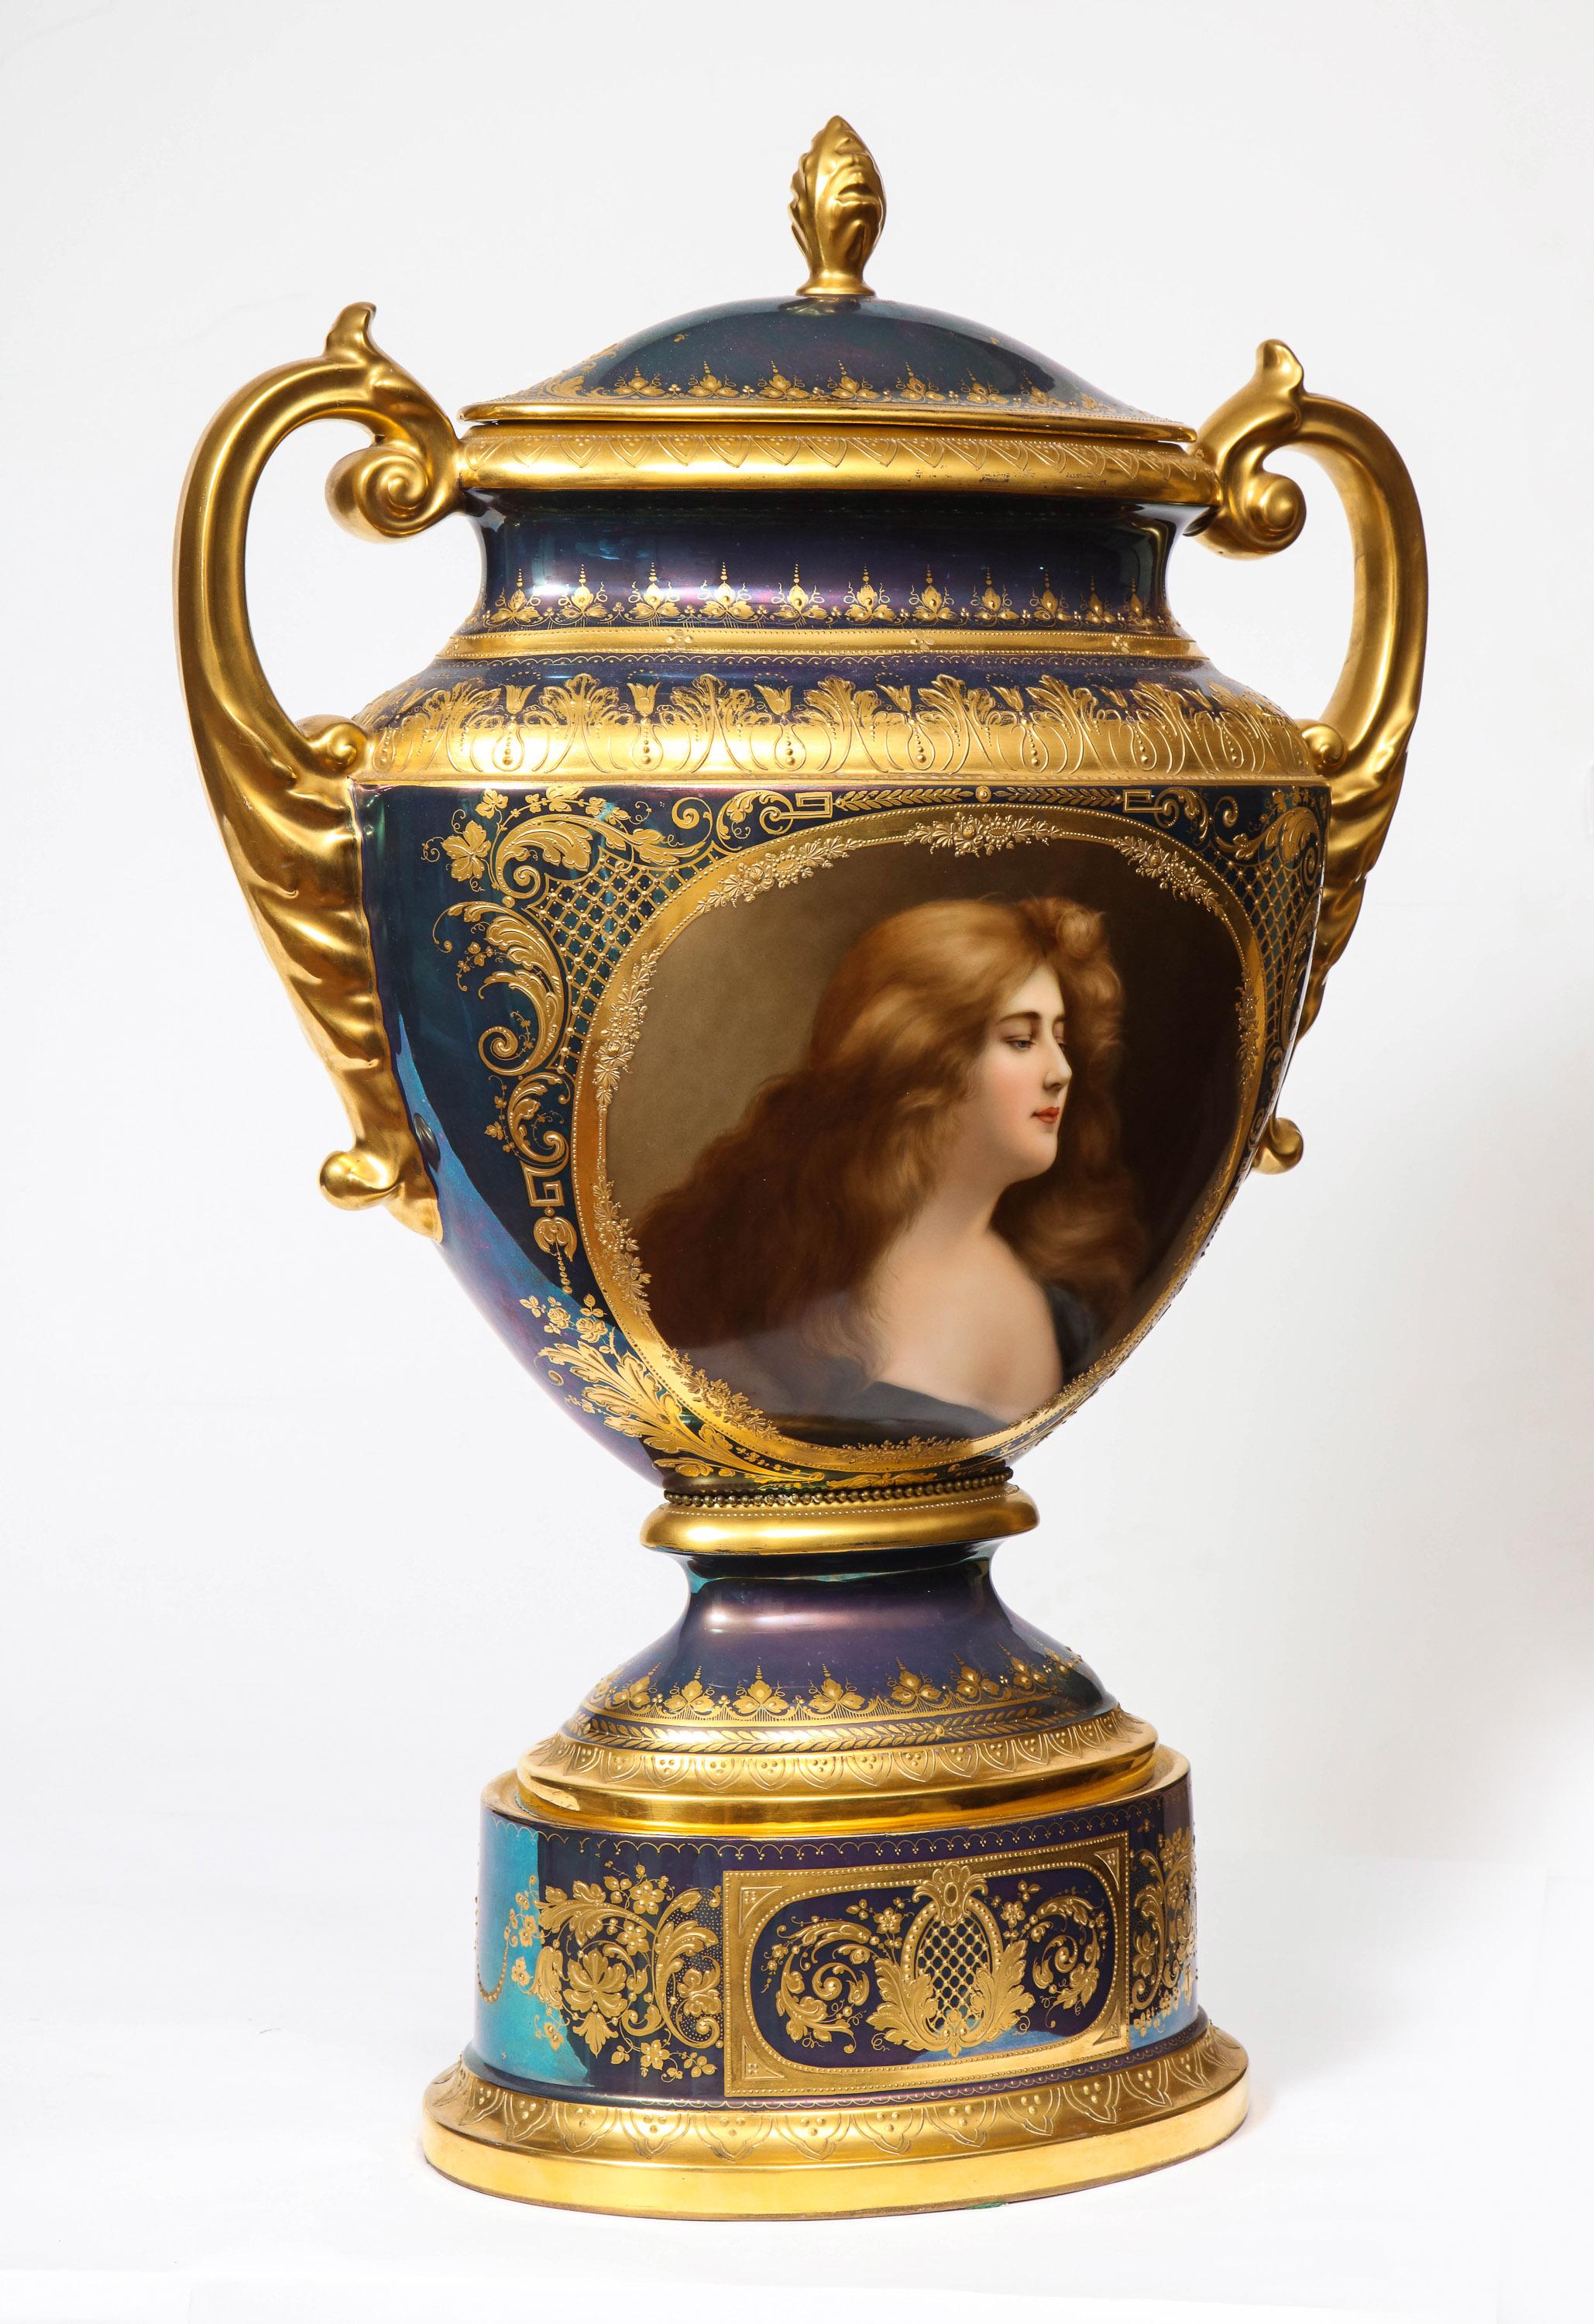 Un vase portrait monumental et un couvercle en porcelaine irisée Royal Vienna, Wagner, vers 1880.

Cette urne royale viennoise présente un lustre irisé exceptionnel, une forme aplatie à deux anses, un exquis portrait allégorique de femme peint à la